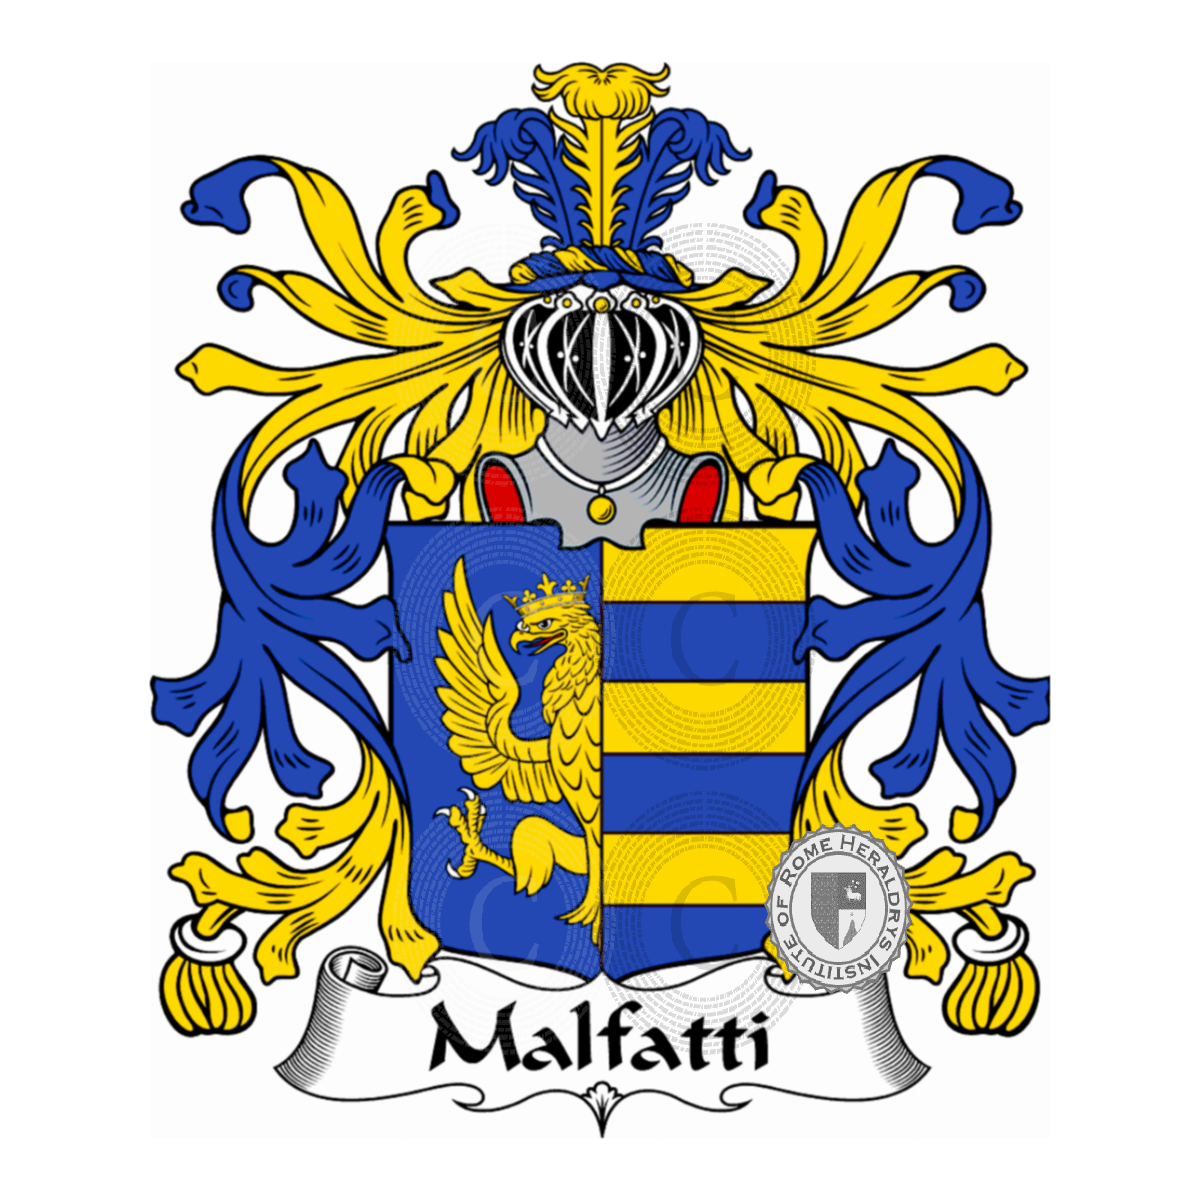 Escudo de la familiaMalfatti, Malafati,Malafatti